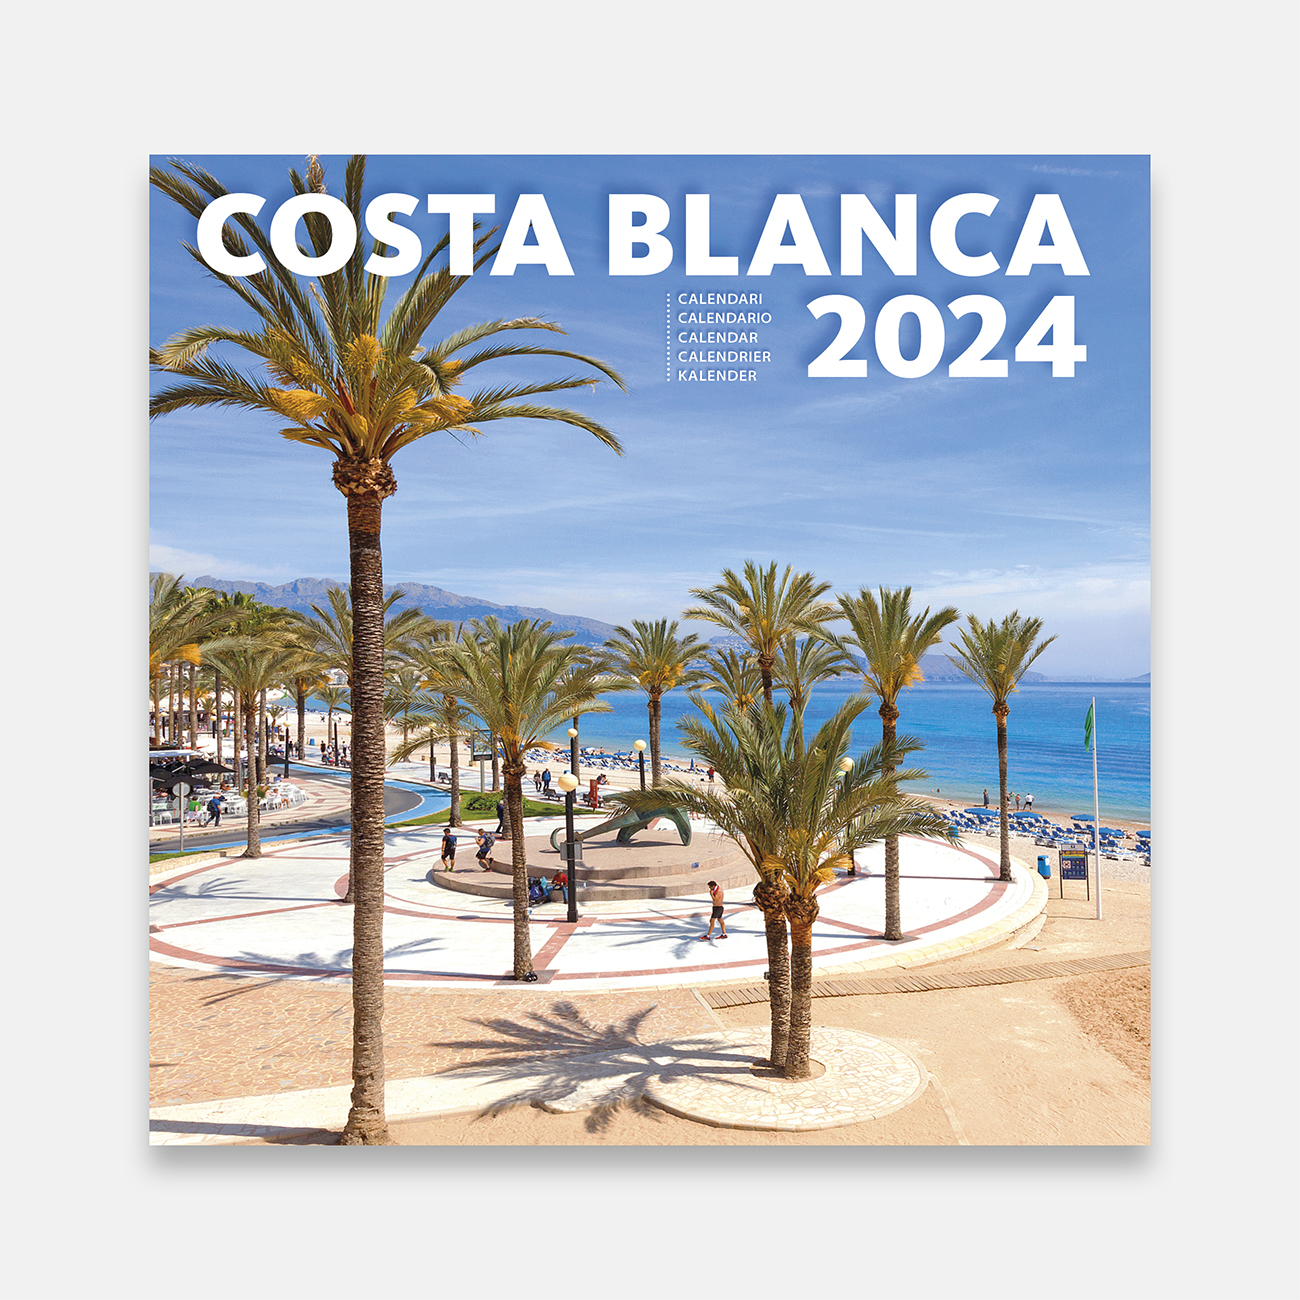 Calendar 2025 Costa Blanca 25bl b calendario pared 2025 costa blanca